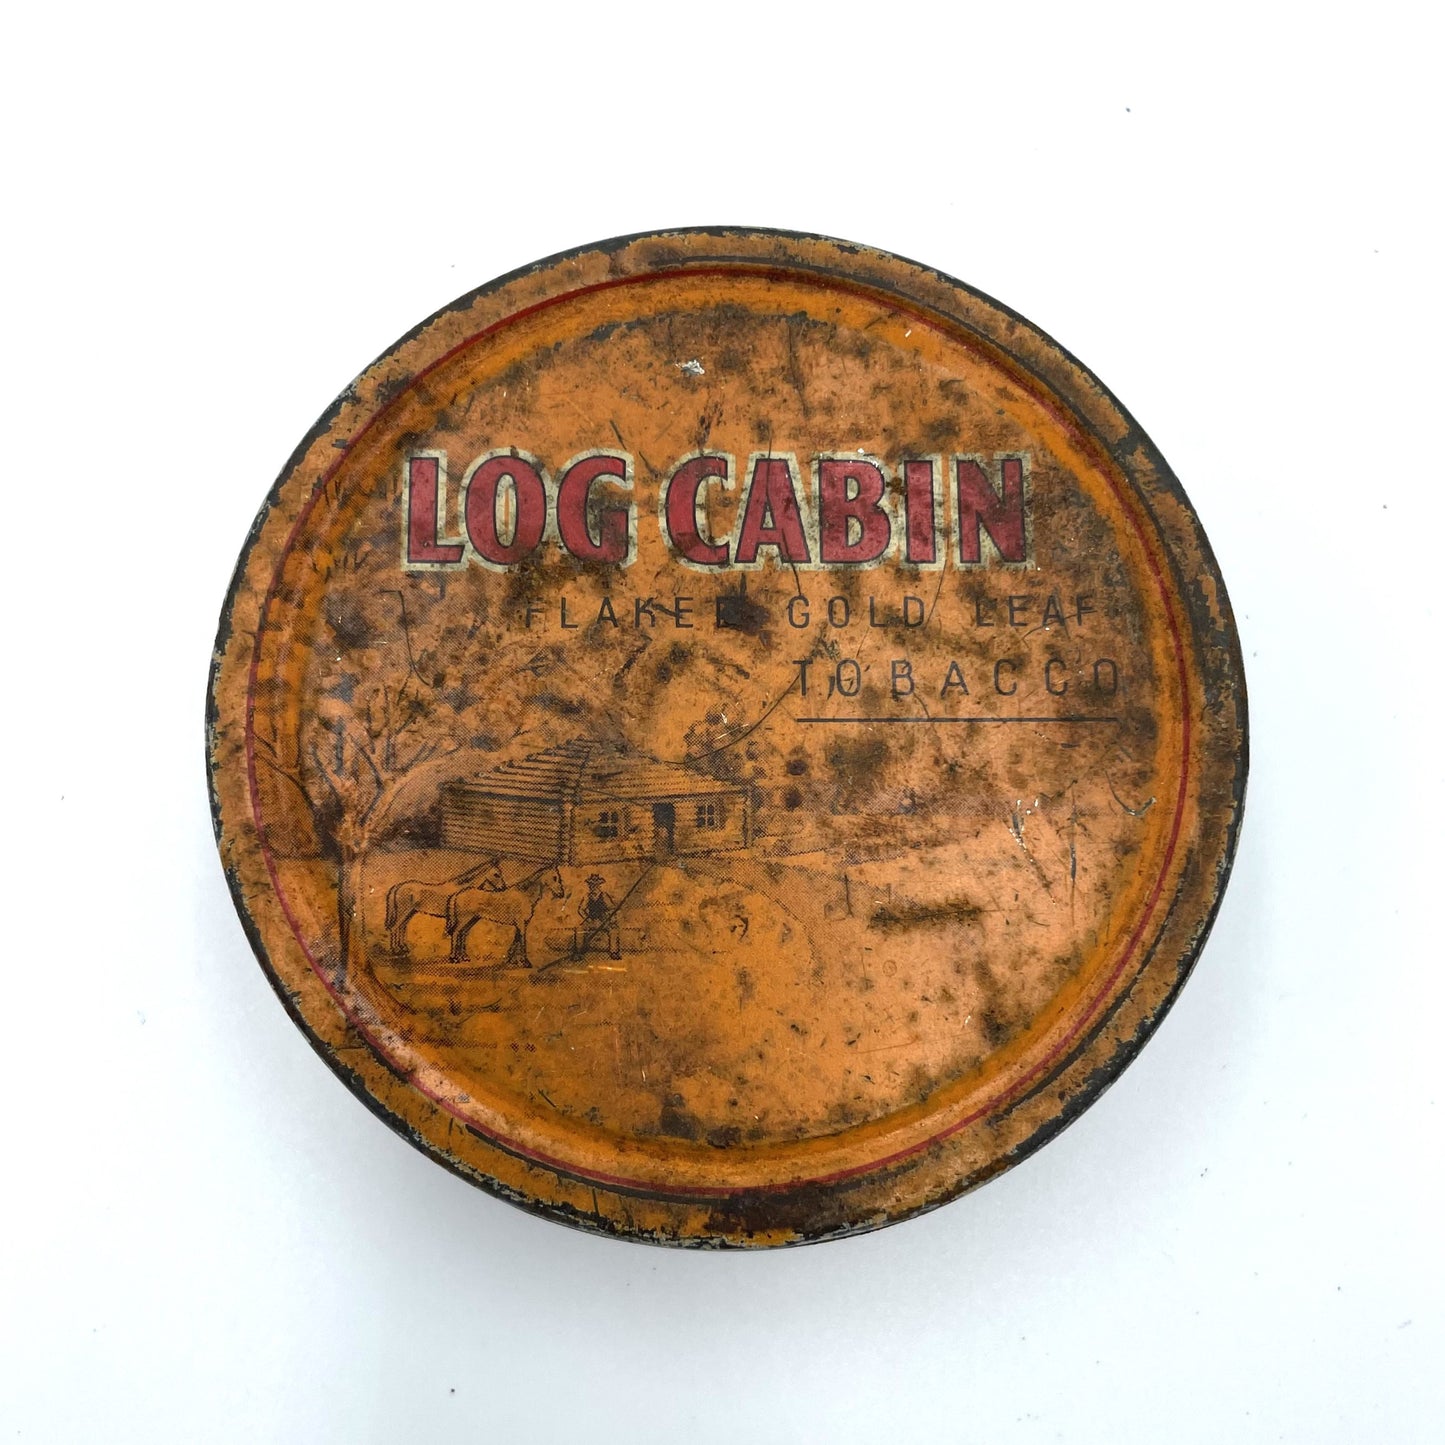 Vintage Log Cabin Flaked Gold Leaf Tobacco Tin - 8cm